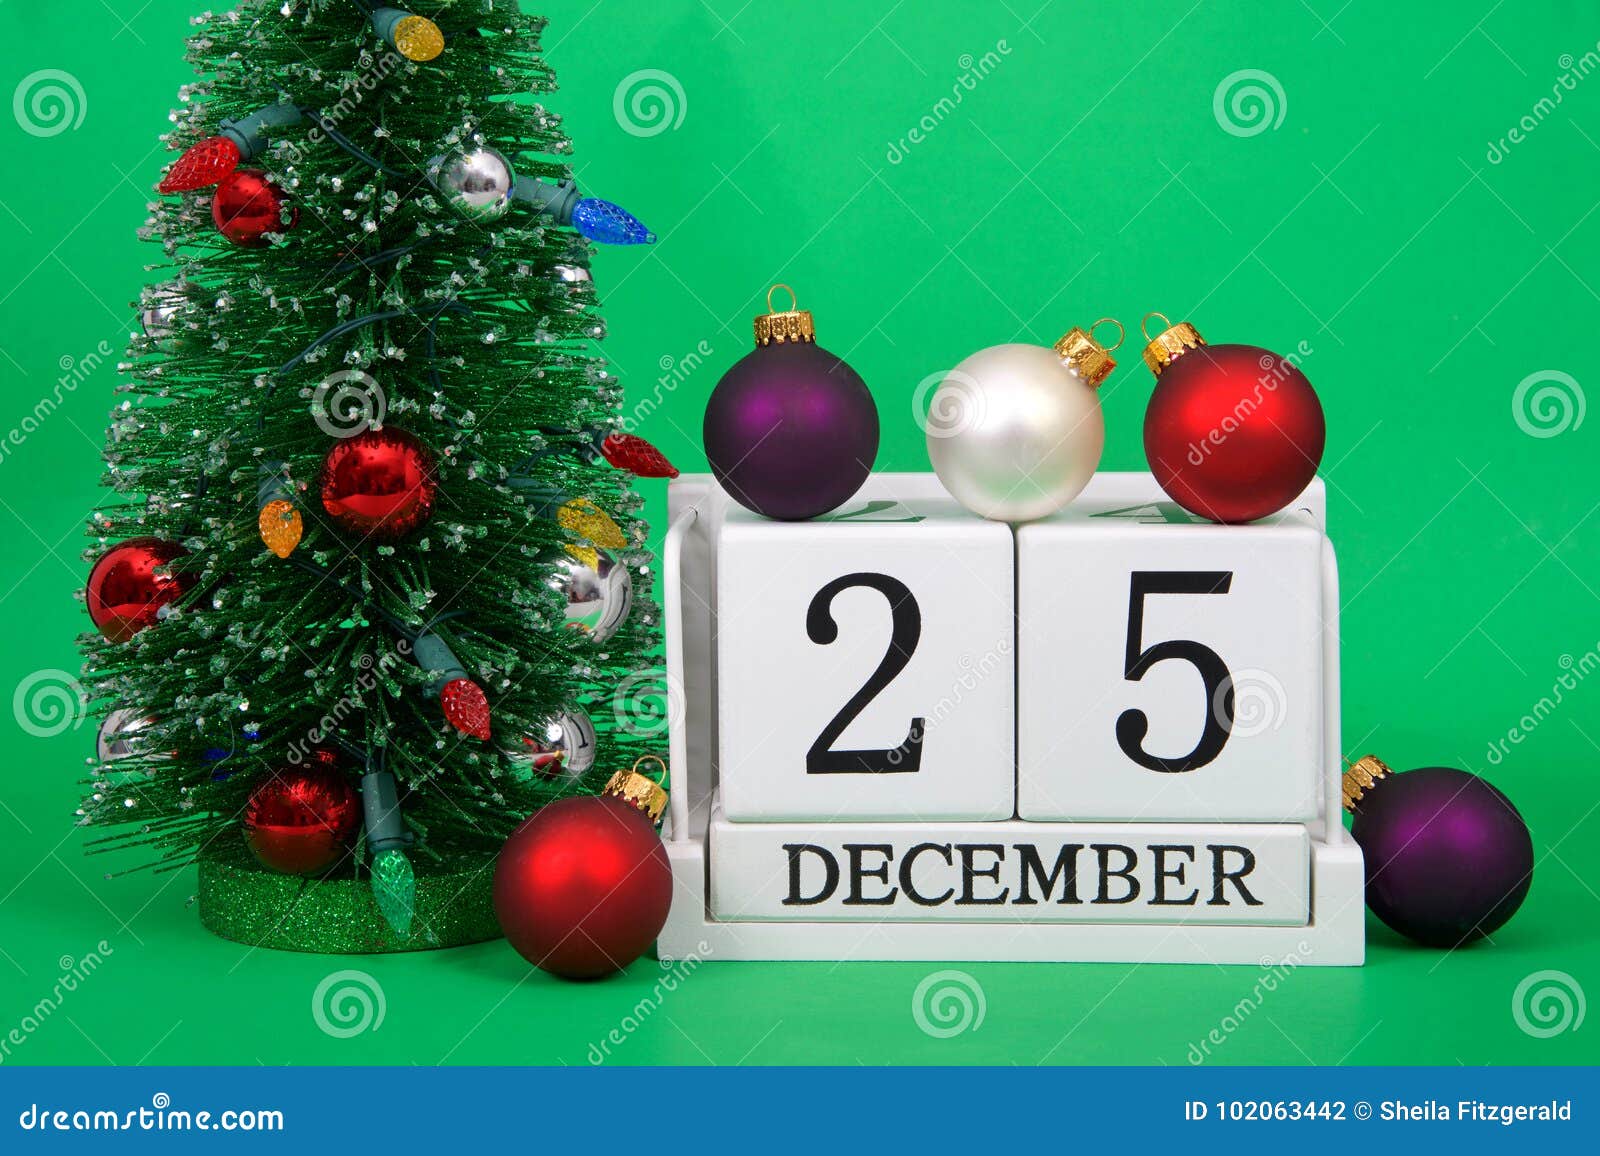 Data Natale.Chiuda Su Dei Blocchi Di Legno Con Data Il Natale Del 25 Dicembre Fotografia Stock Immagine Di Evento Giorno 102063442